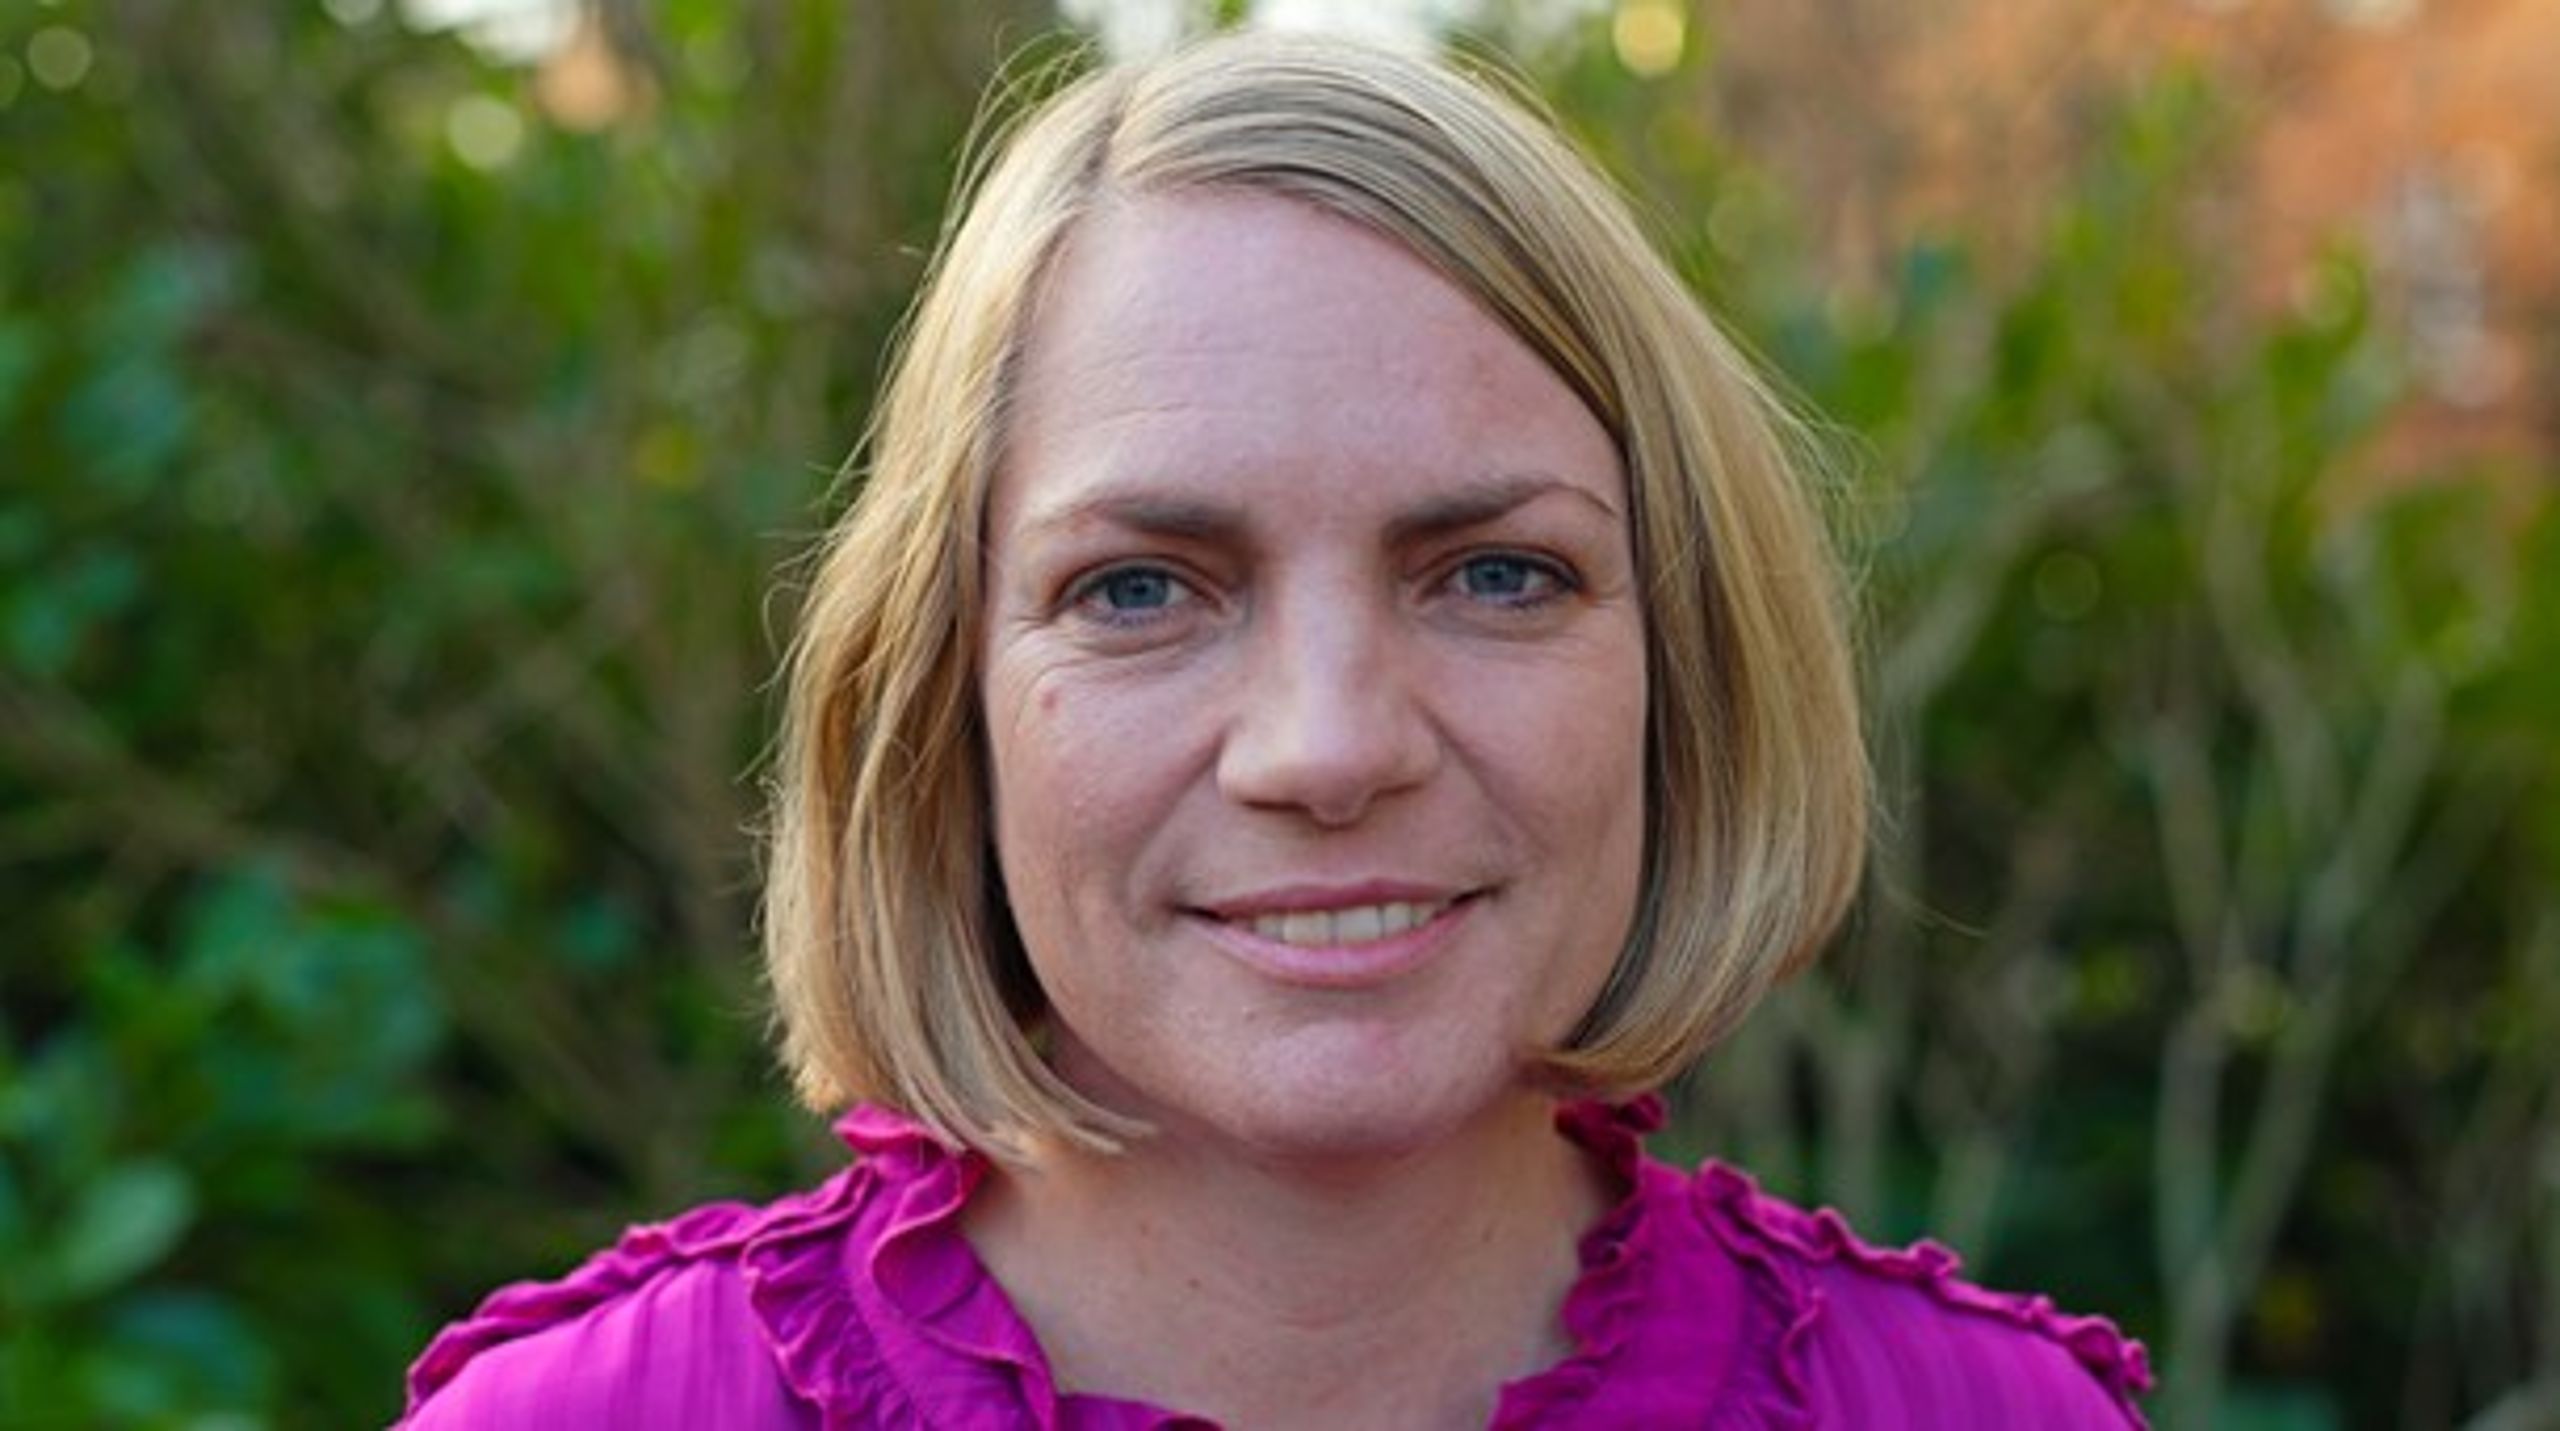 Katrine Axél bliver ny direktør i Syddjurs Kommune fra februar. Hun er blandt andre ansat af kommunens kommende kommunaldirektør Rasmus Møller, som først starter i begyndelsen af januar.